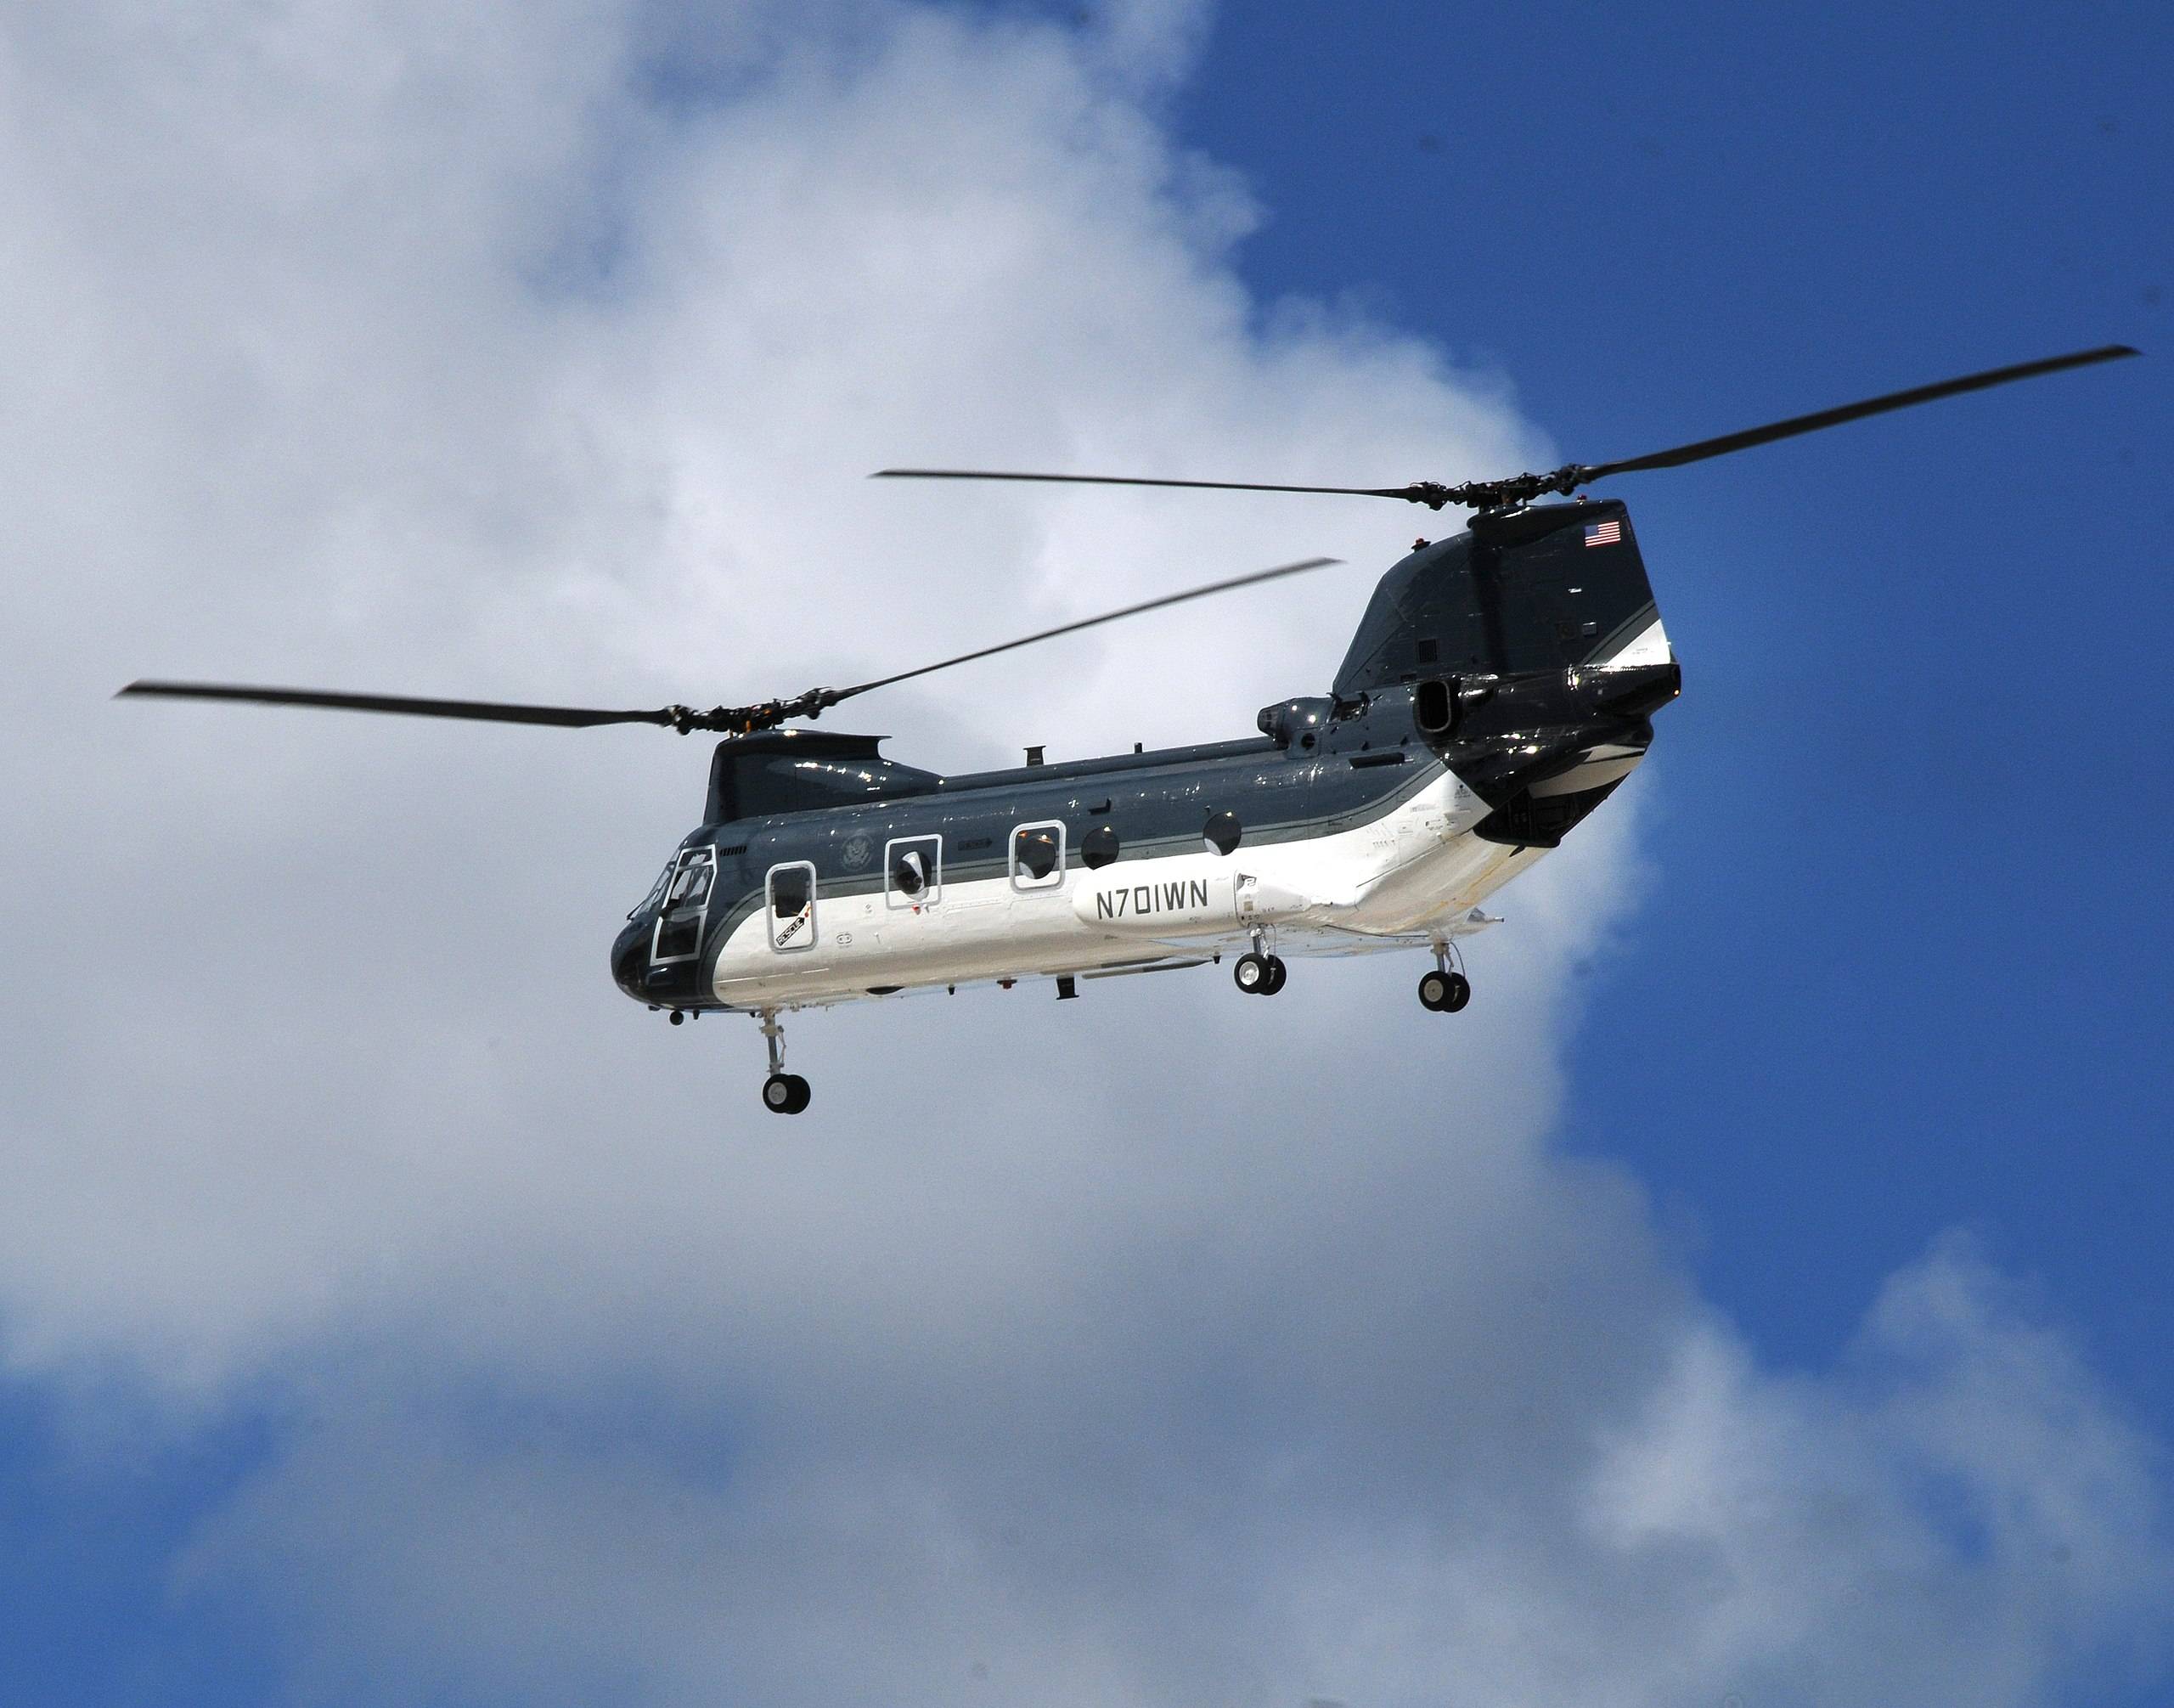 专业撤退46年!一架"海骑士"直升机,两次见证美国抛弃昔日盟友